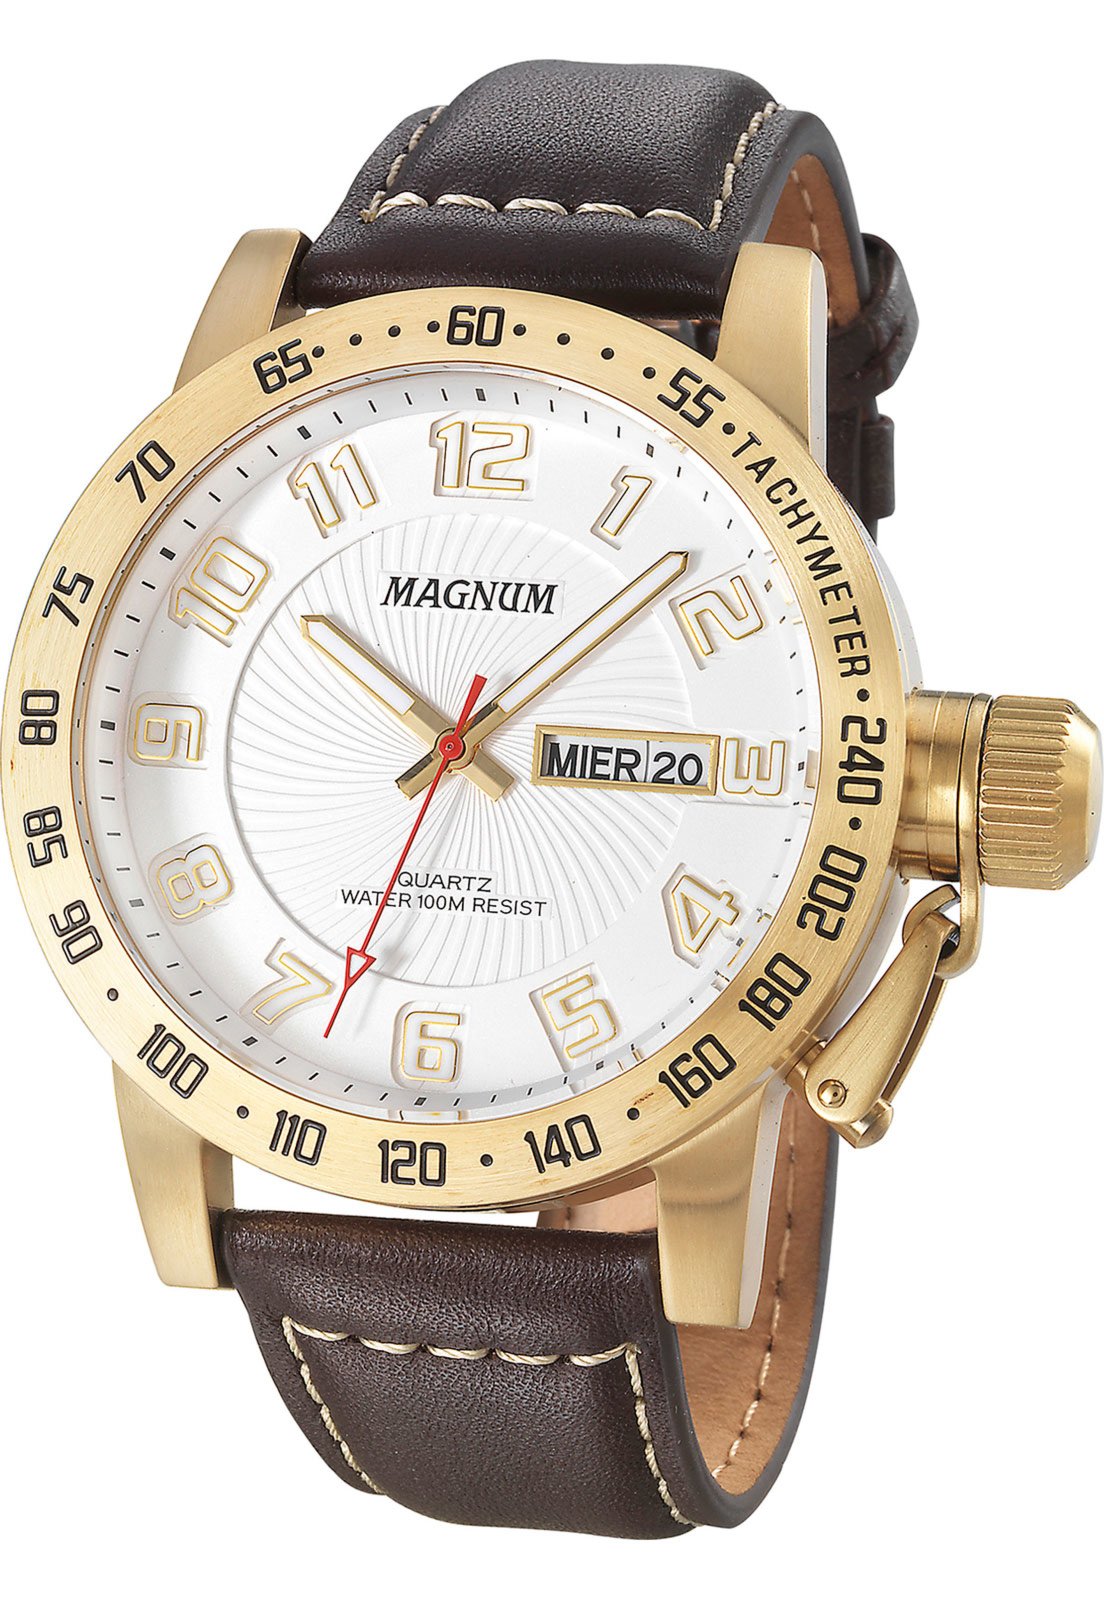 Relógio Magnum Dourado Automático MA33960U - Relógio de Pulso - Magazine  Luiza